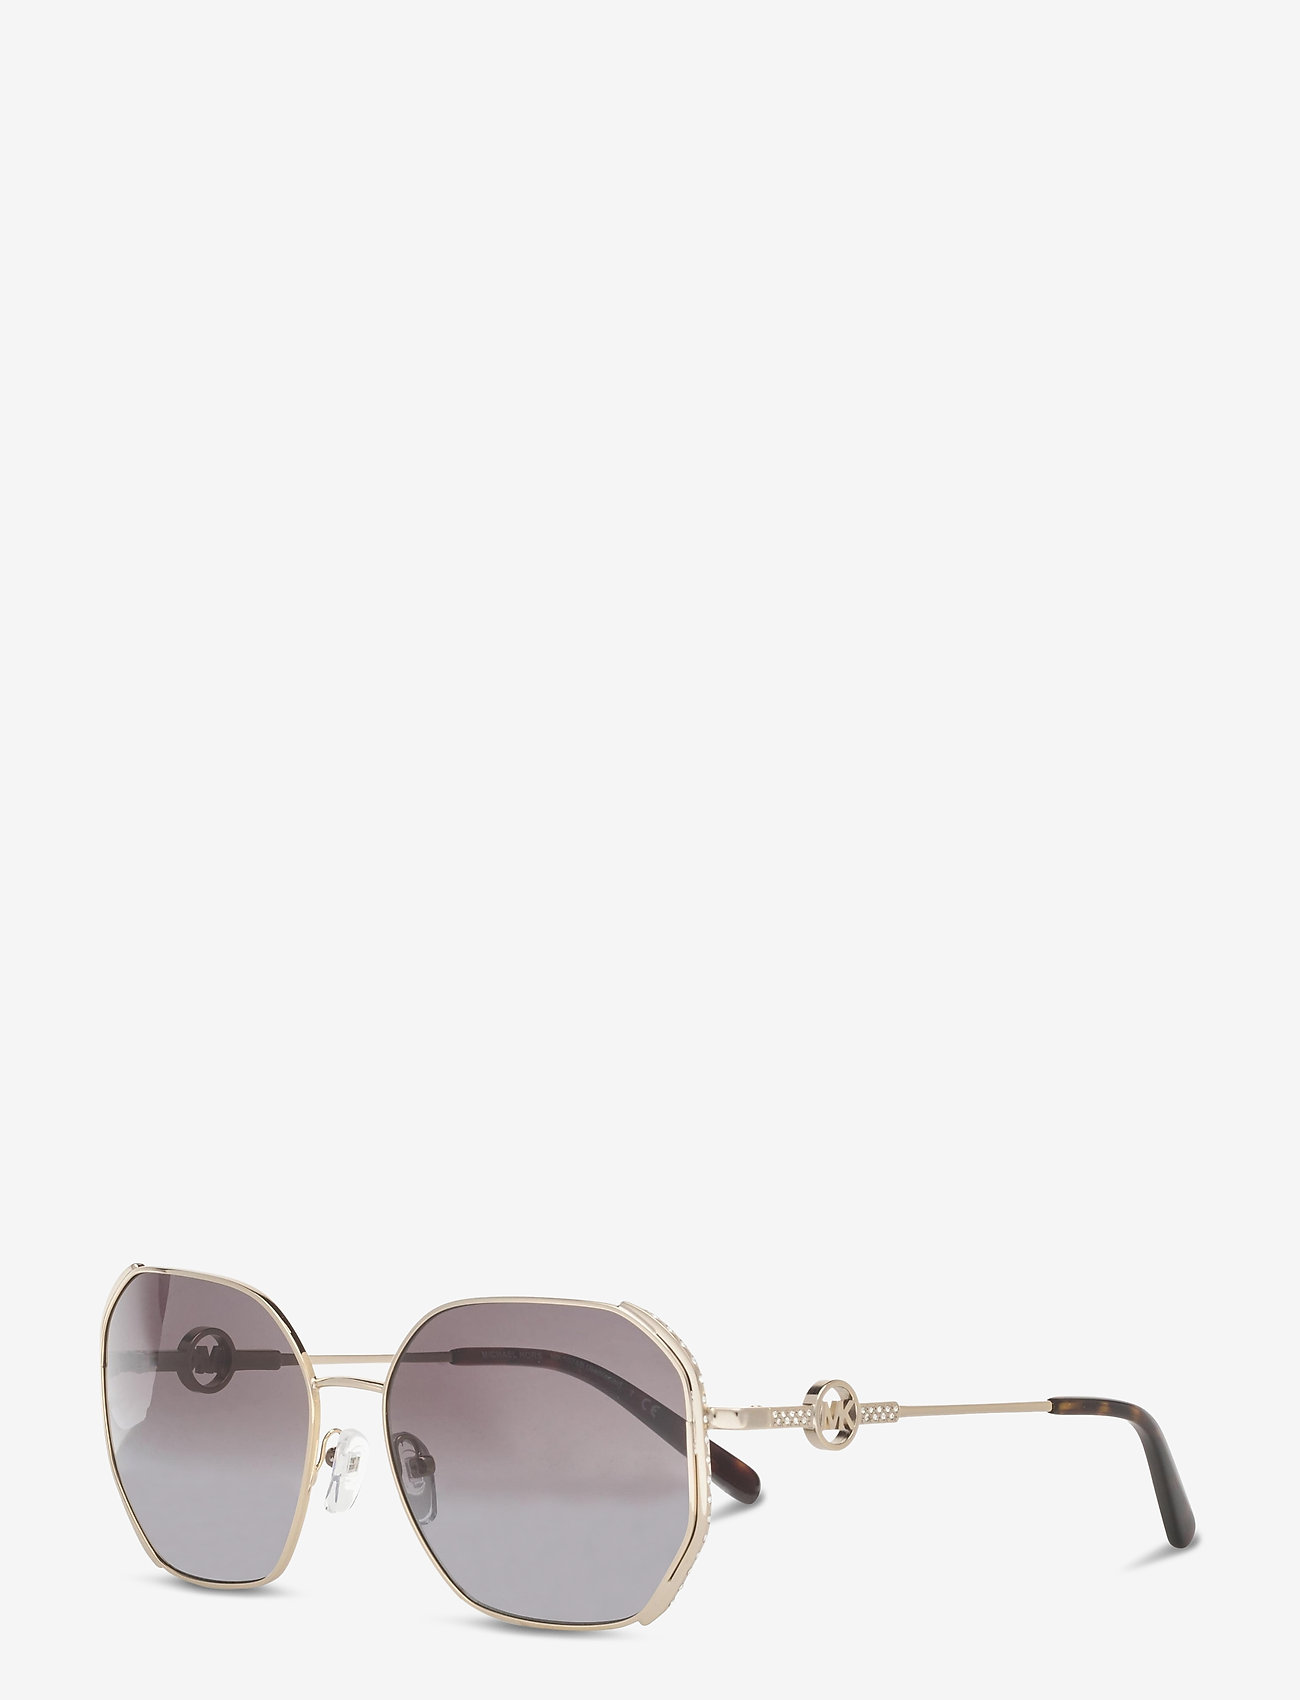 michael kors sunglasses white frame